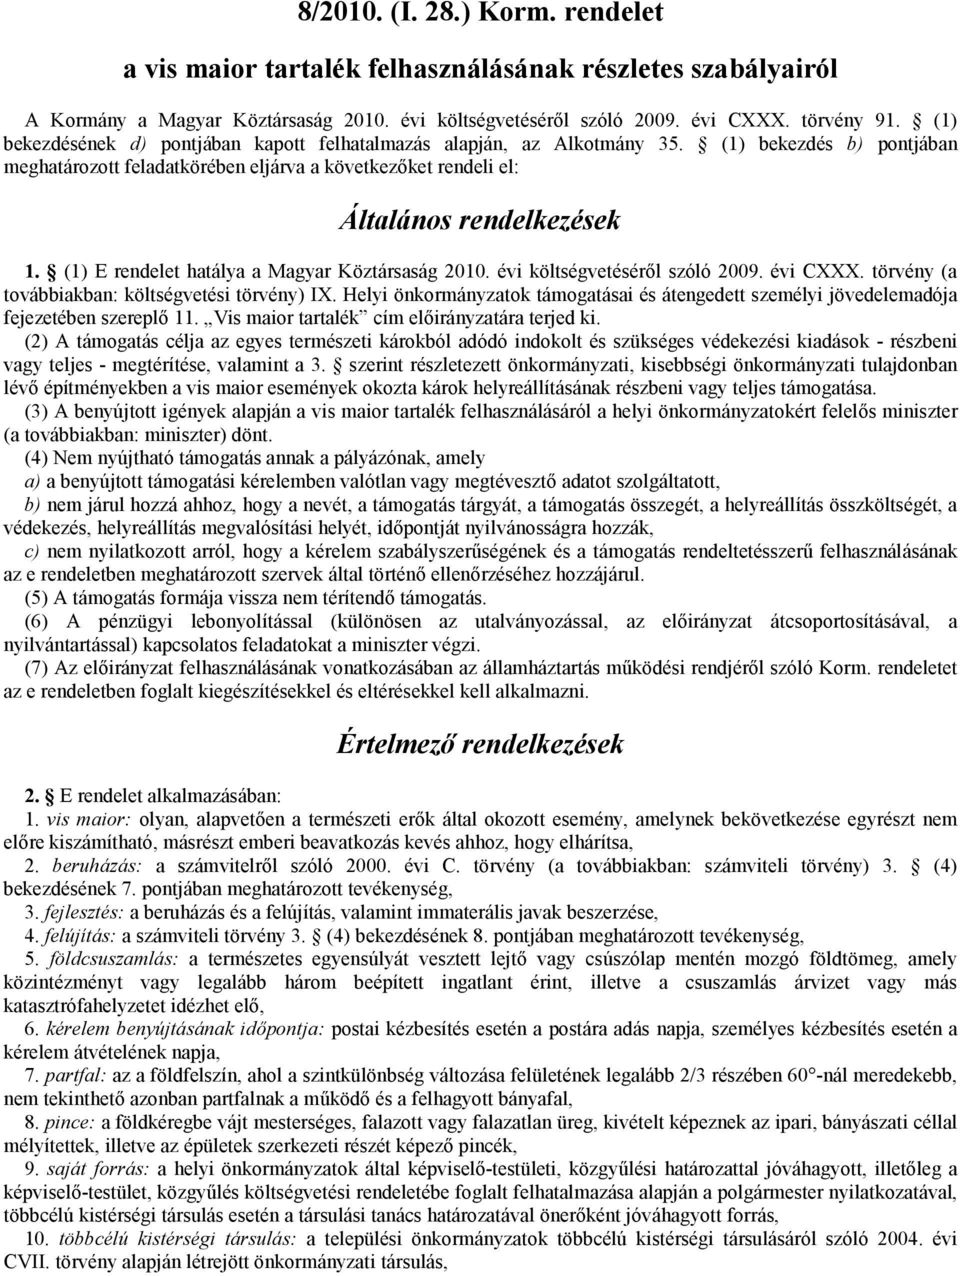 (1) E rendelet hatálya a Magyar Köztársaság 2010. évi költségvetéséről szóló 2009. évi CXXX. törvény (a továbbiakban: költségvetési törvény) IX.